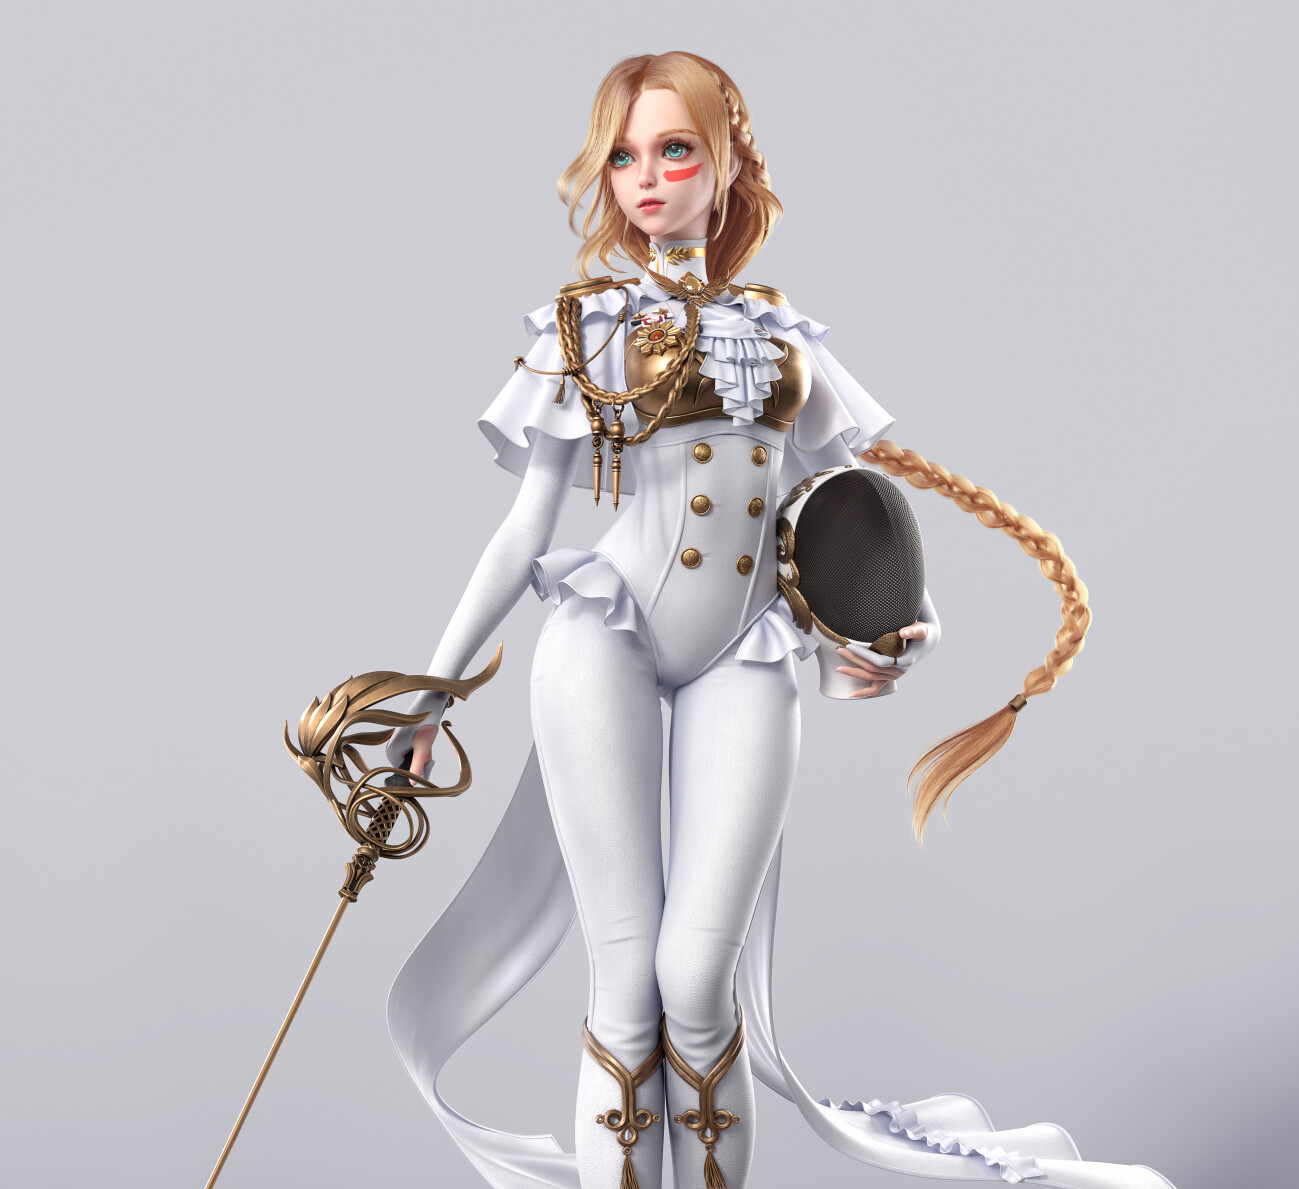 General 1299x1189 Cavan CGI women blonde white clothing face paint weapon rapier simple background